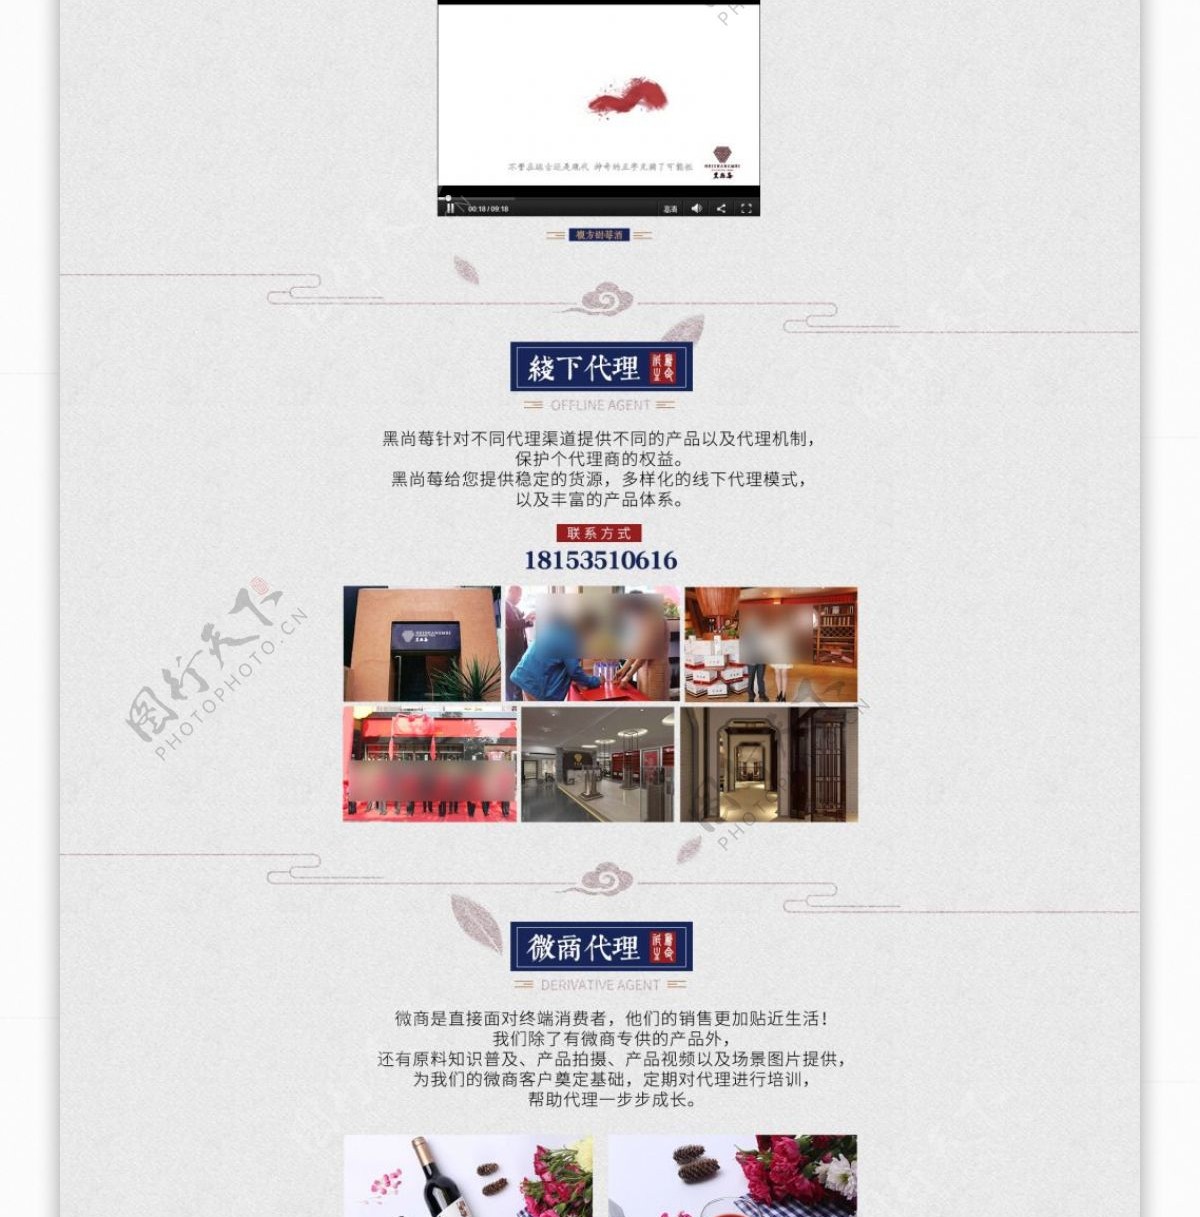 天猫京东淘宝电商节日促销饮料酒品首页设计排版模板